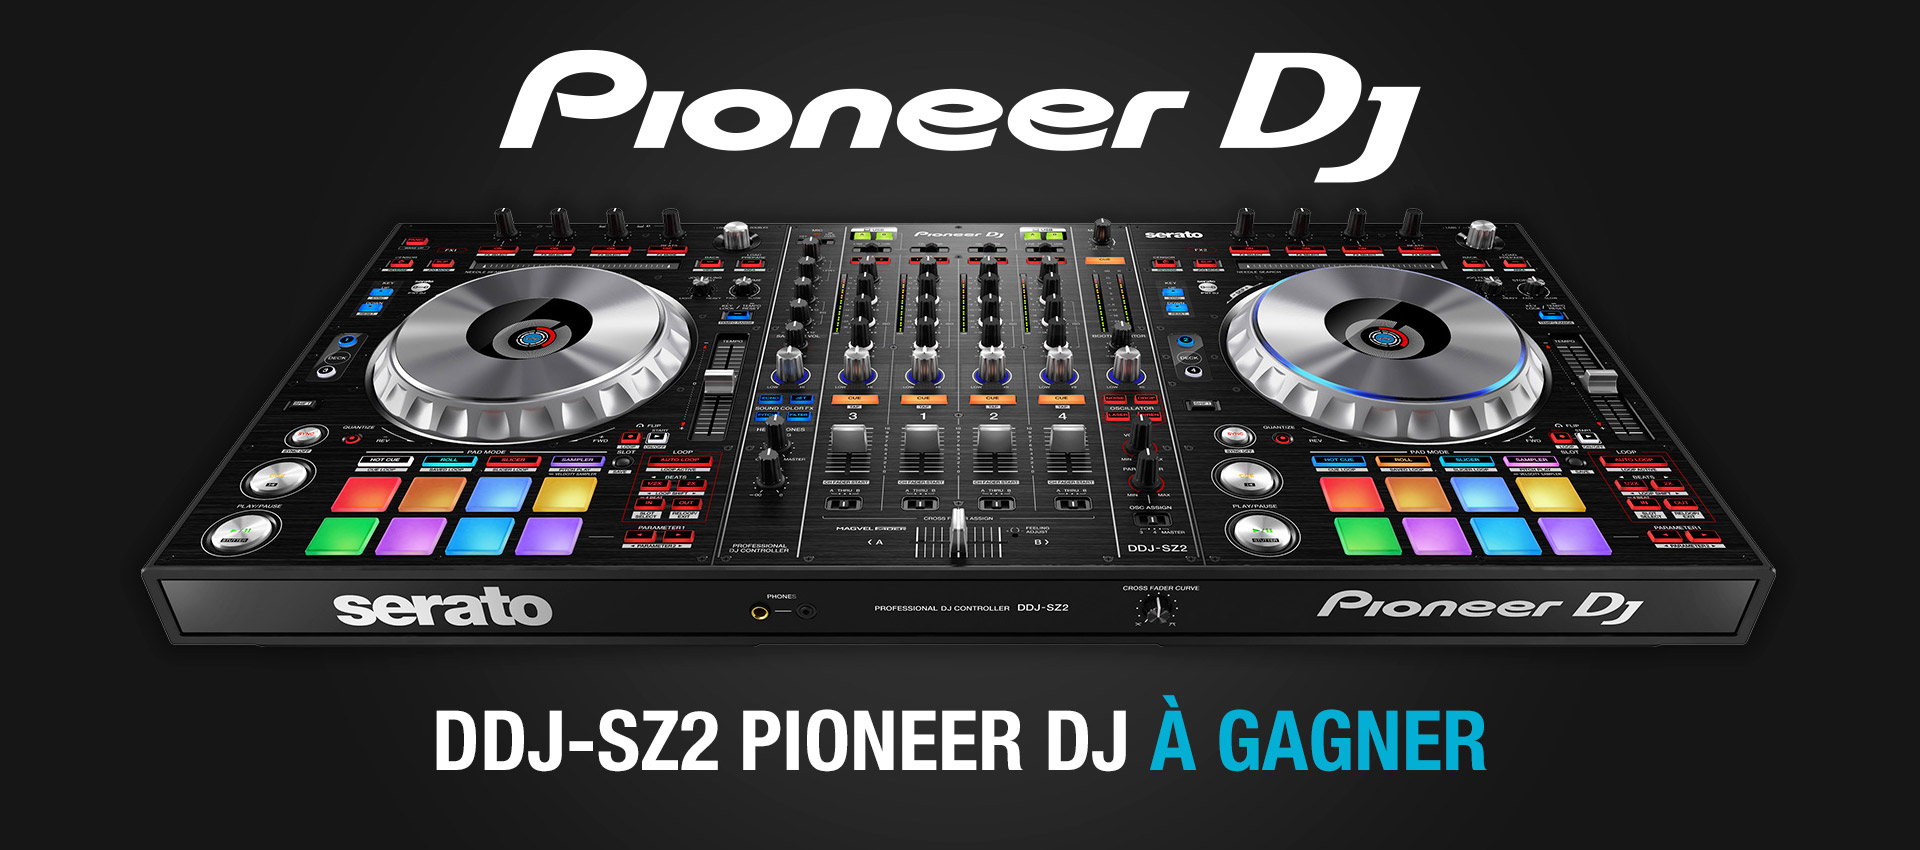 Jeu-concours Pioneer DJ DDJ-SZ2